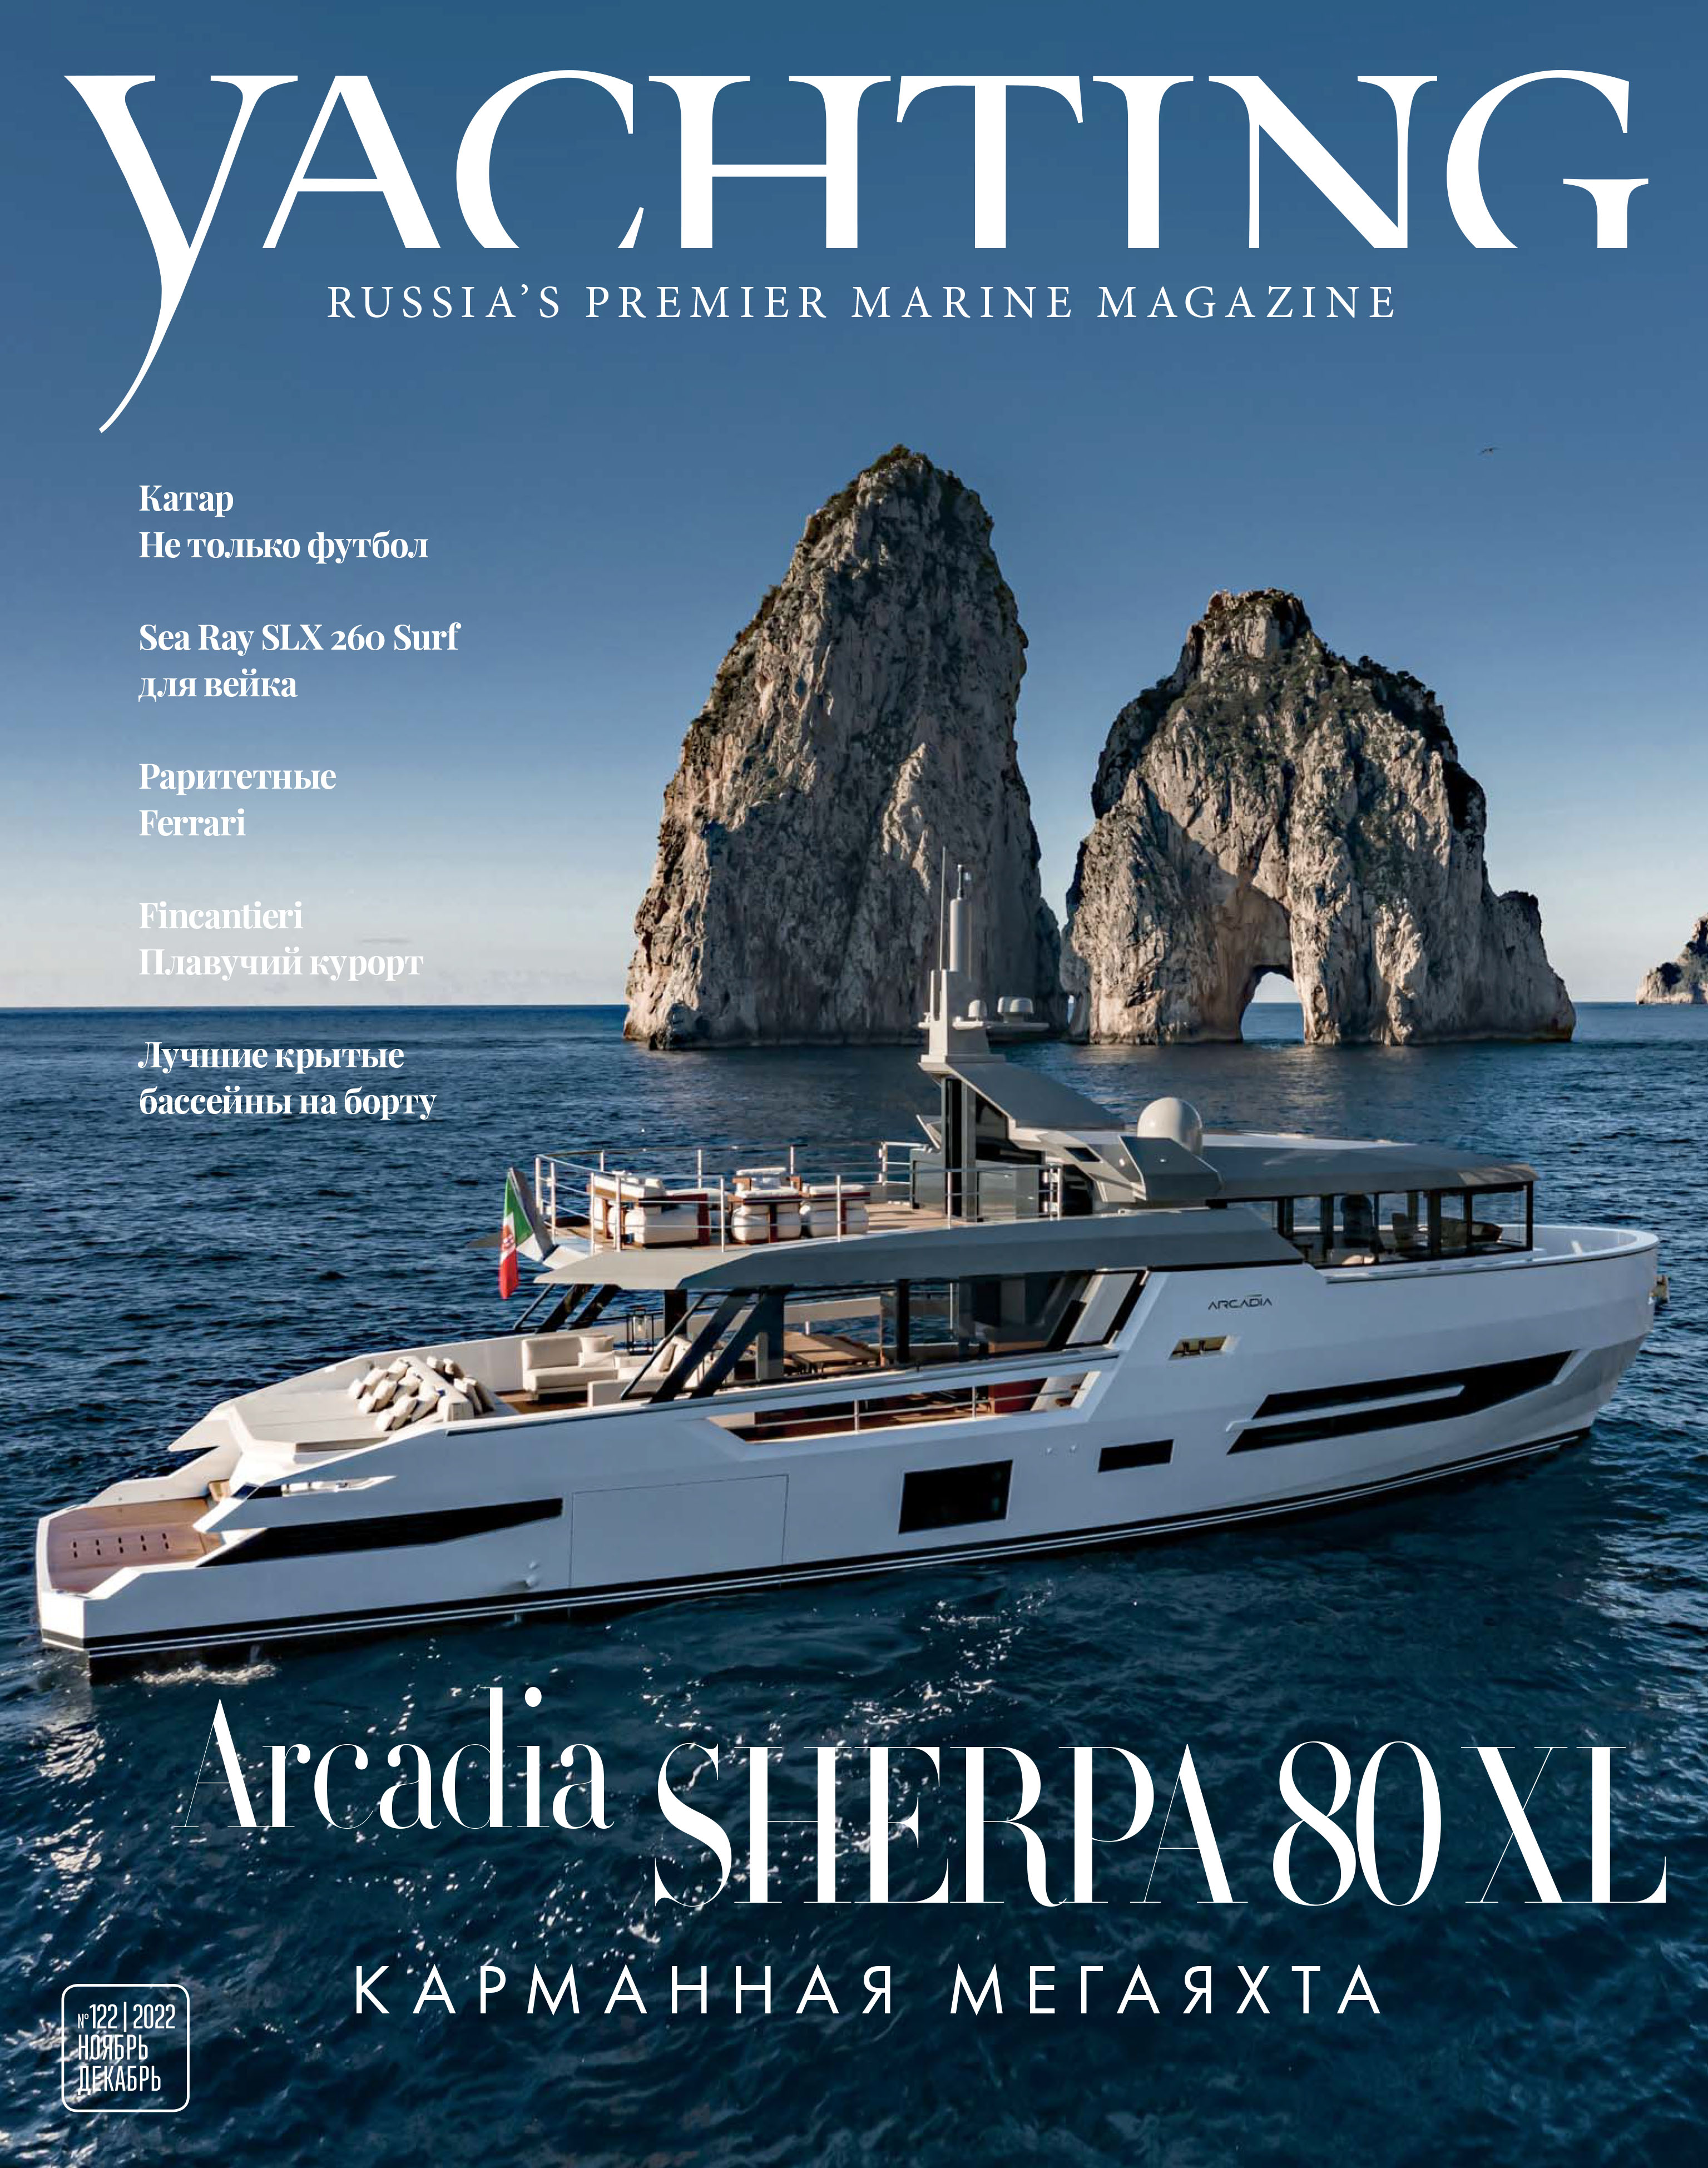 Yachting Russia's Premier marine magazine, Issue 122